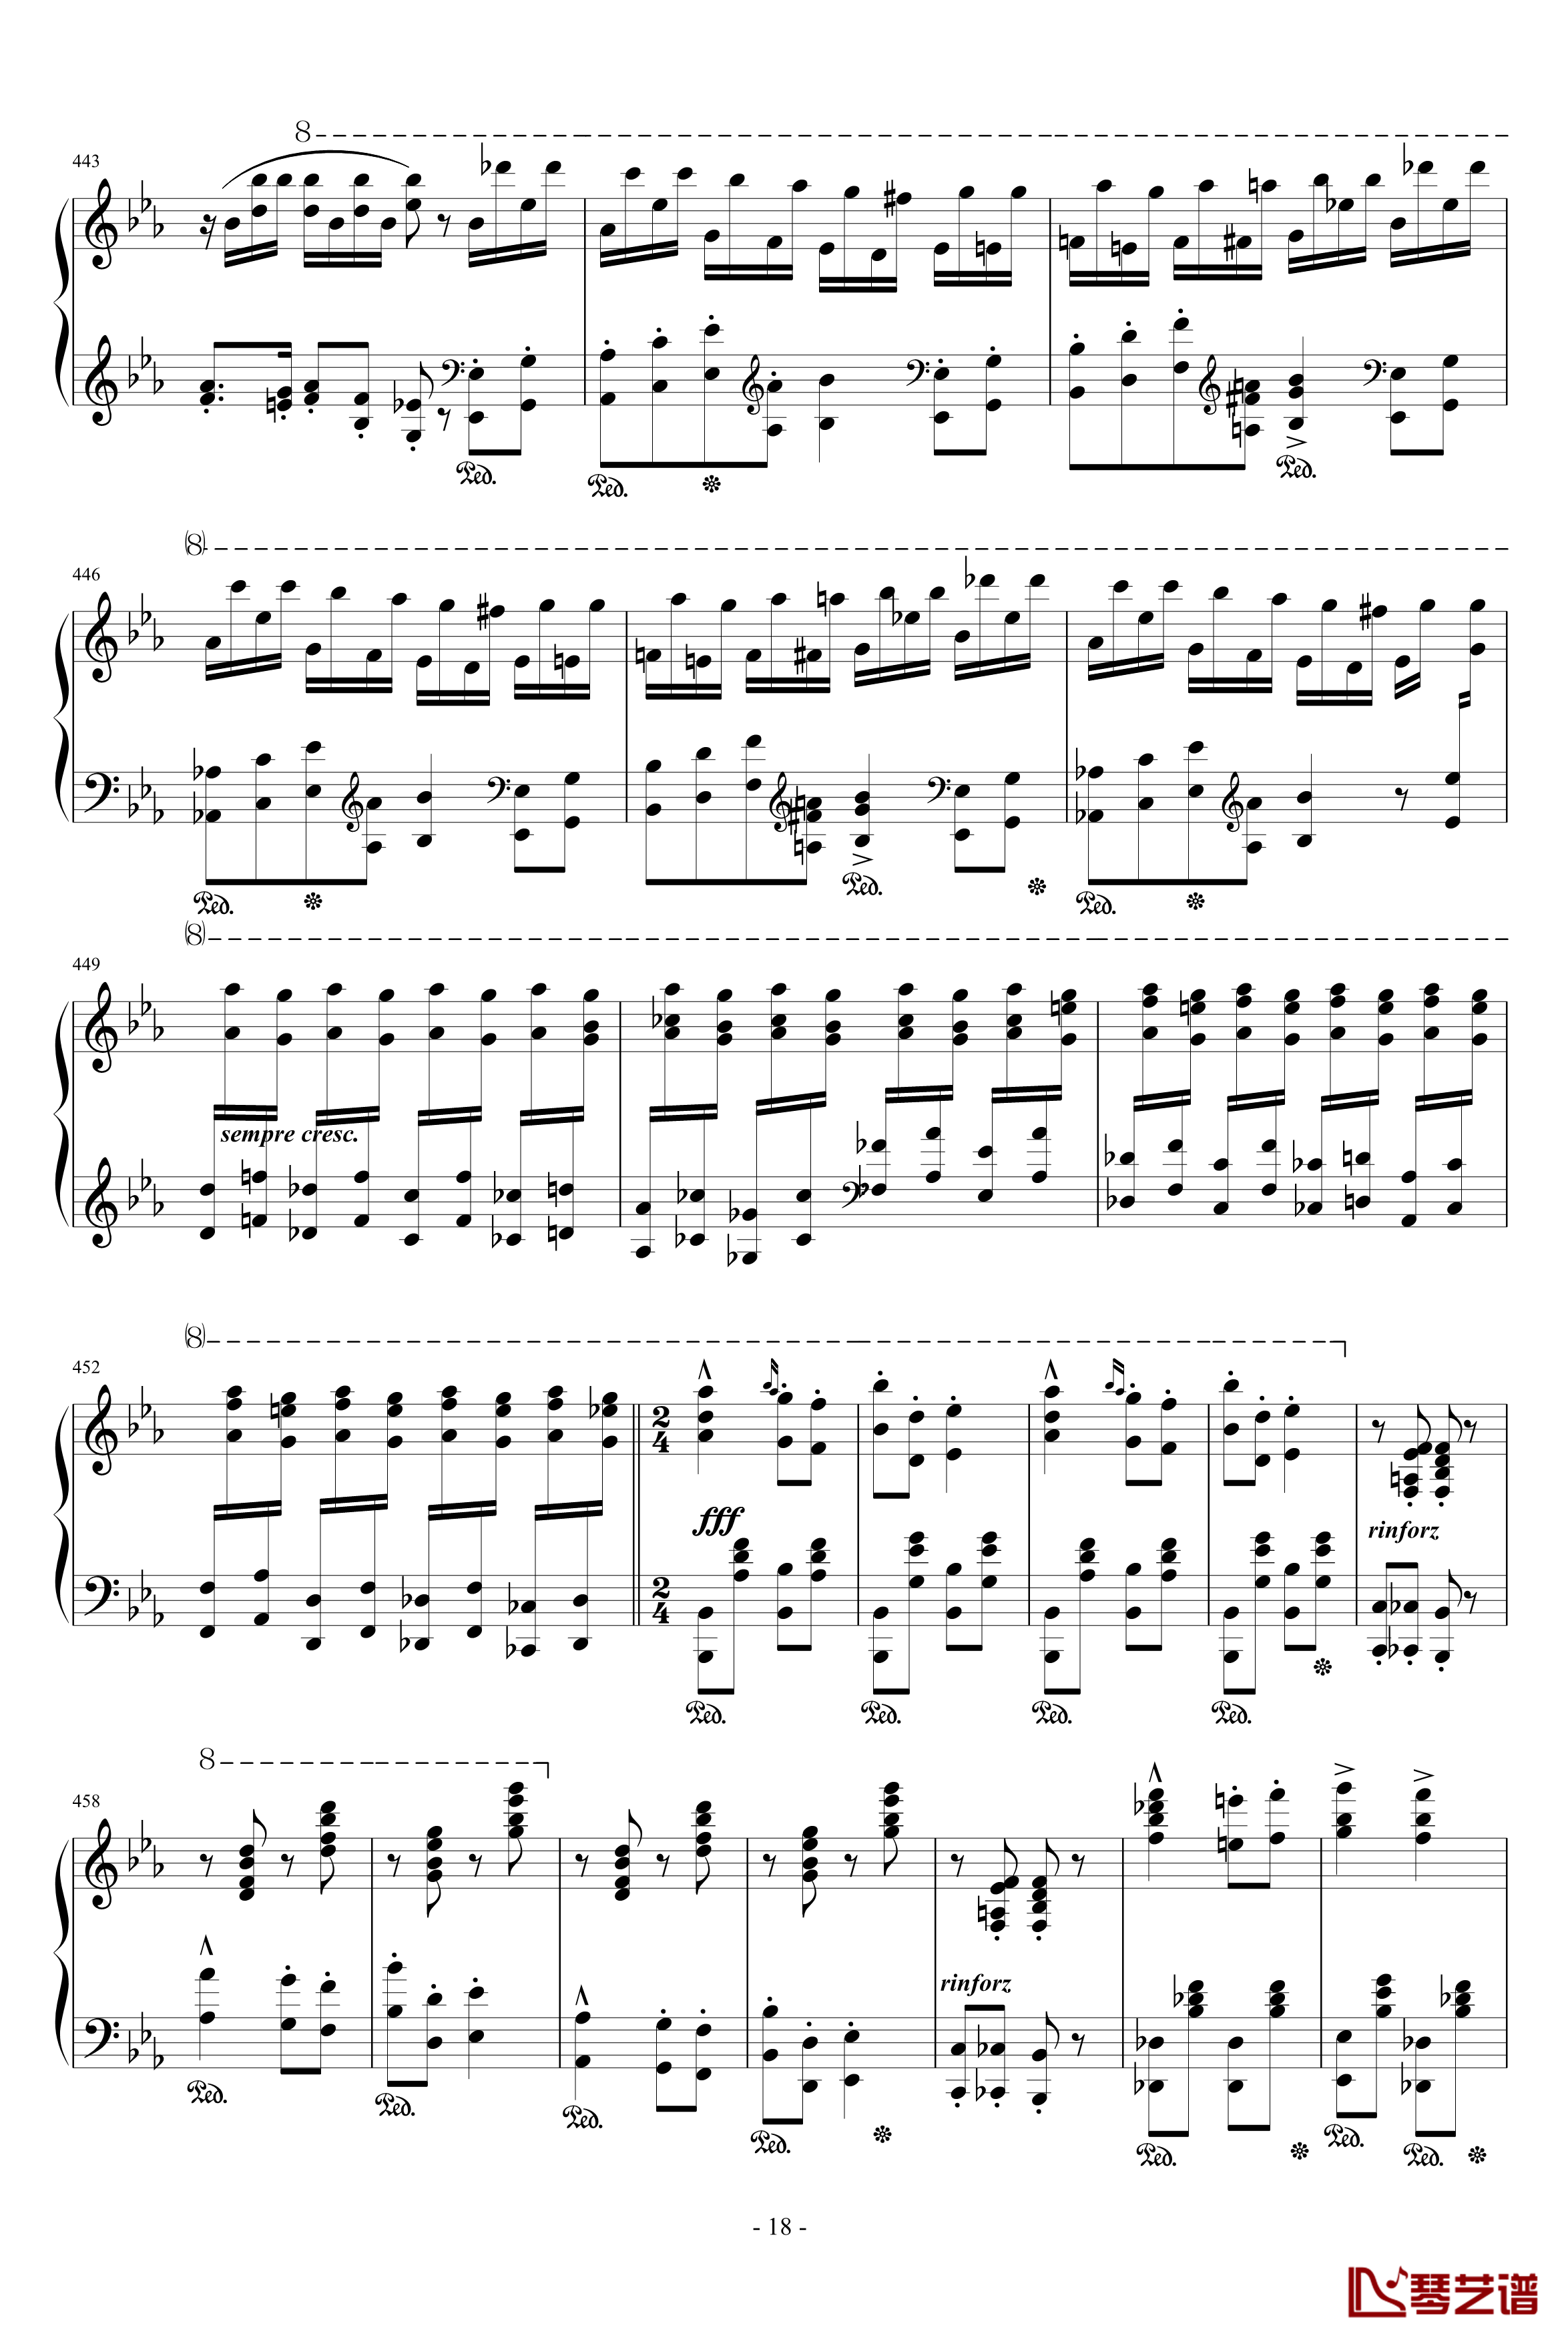 匈牙利狂想曲第9号钢琴谱-19首匈狂里篇幅最浩大、技巧最艰深的作品之一-李斯特18